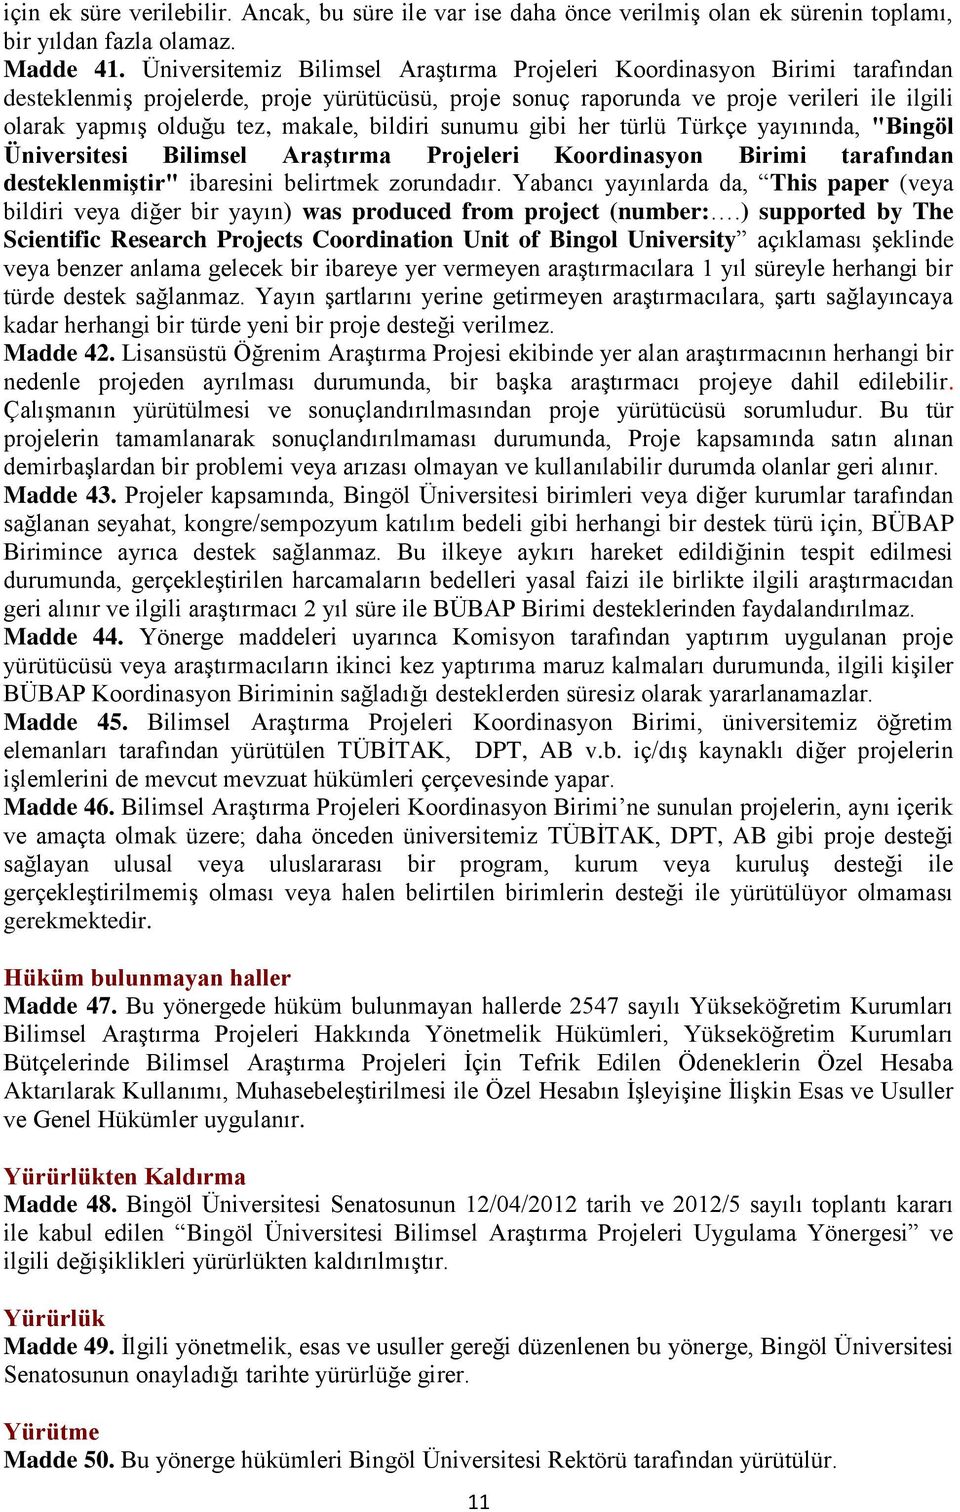 makale, bildiri sunumu gibi her türlü Türkçe yayınında, "Bingöl Üniversitesi Bilimsel Araştırma Projeleri Koordinasyon Birimi tarafından desteklenmiştir" ibaresini belirtmek zorundadır.